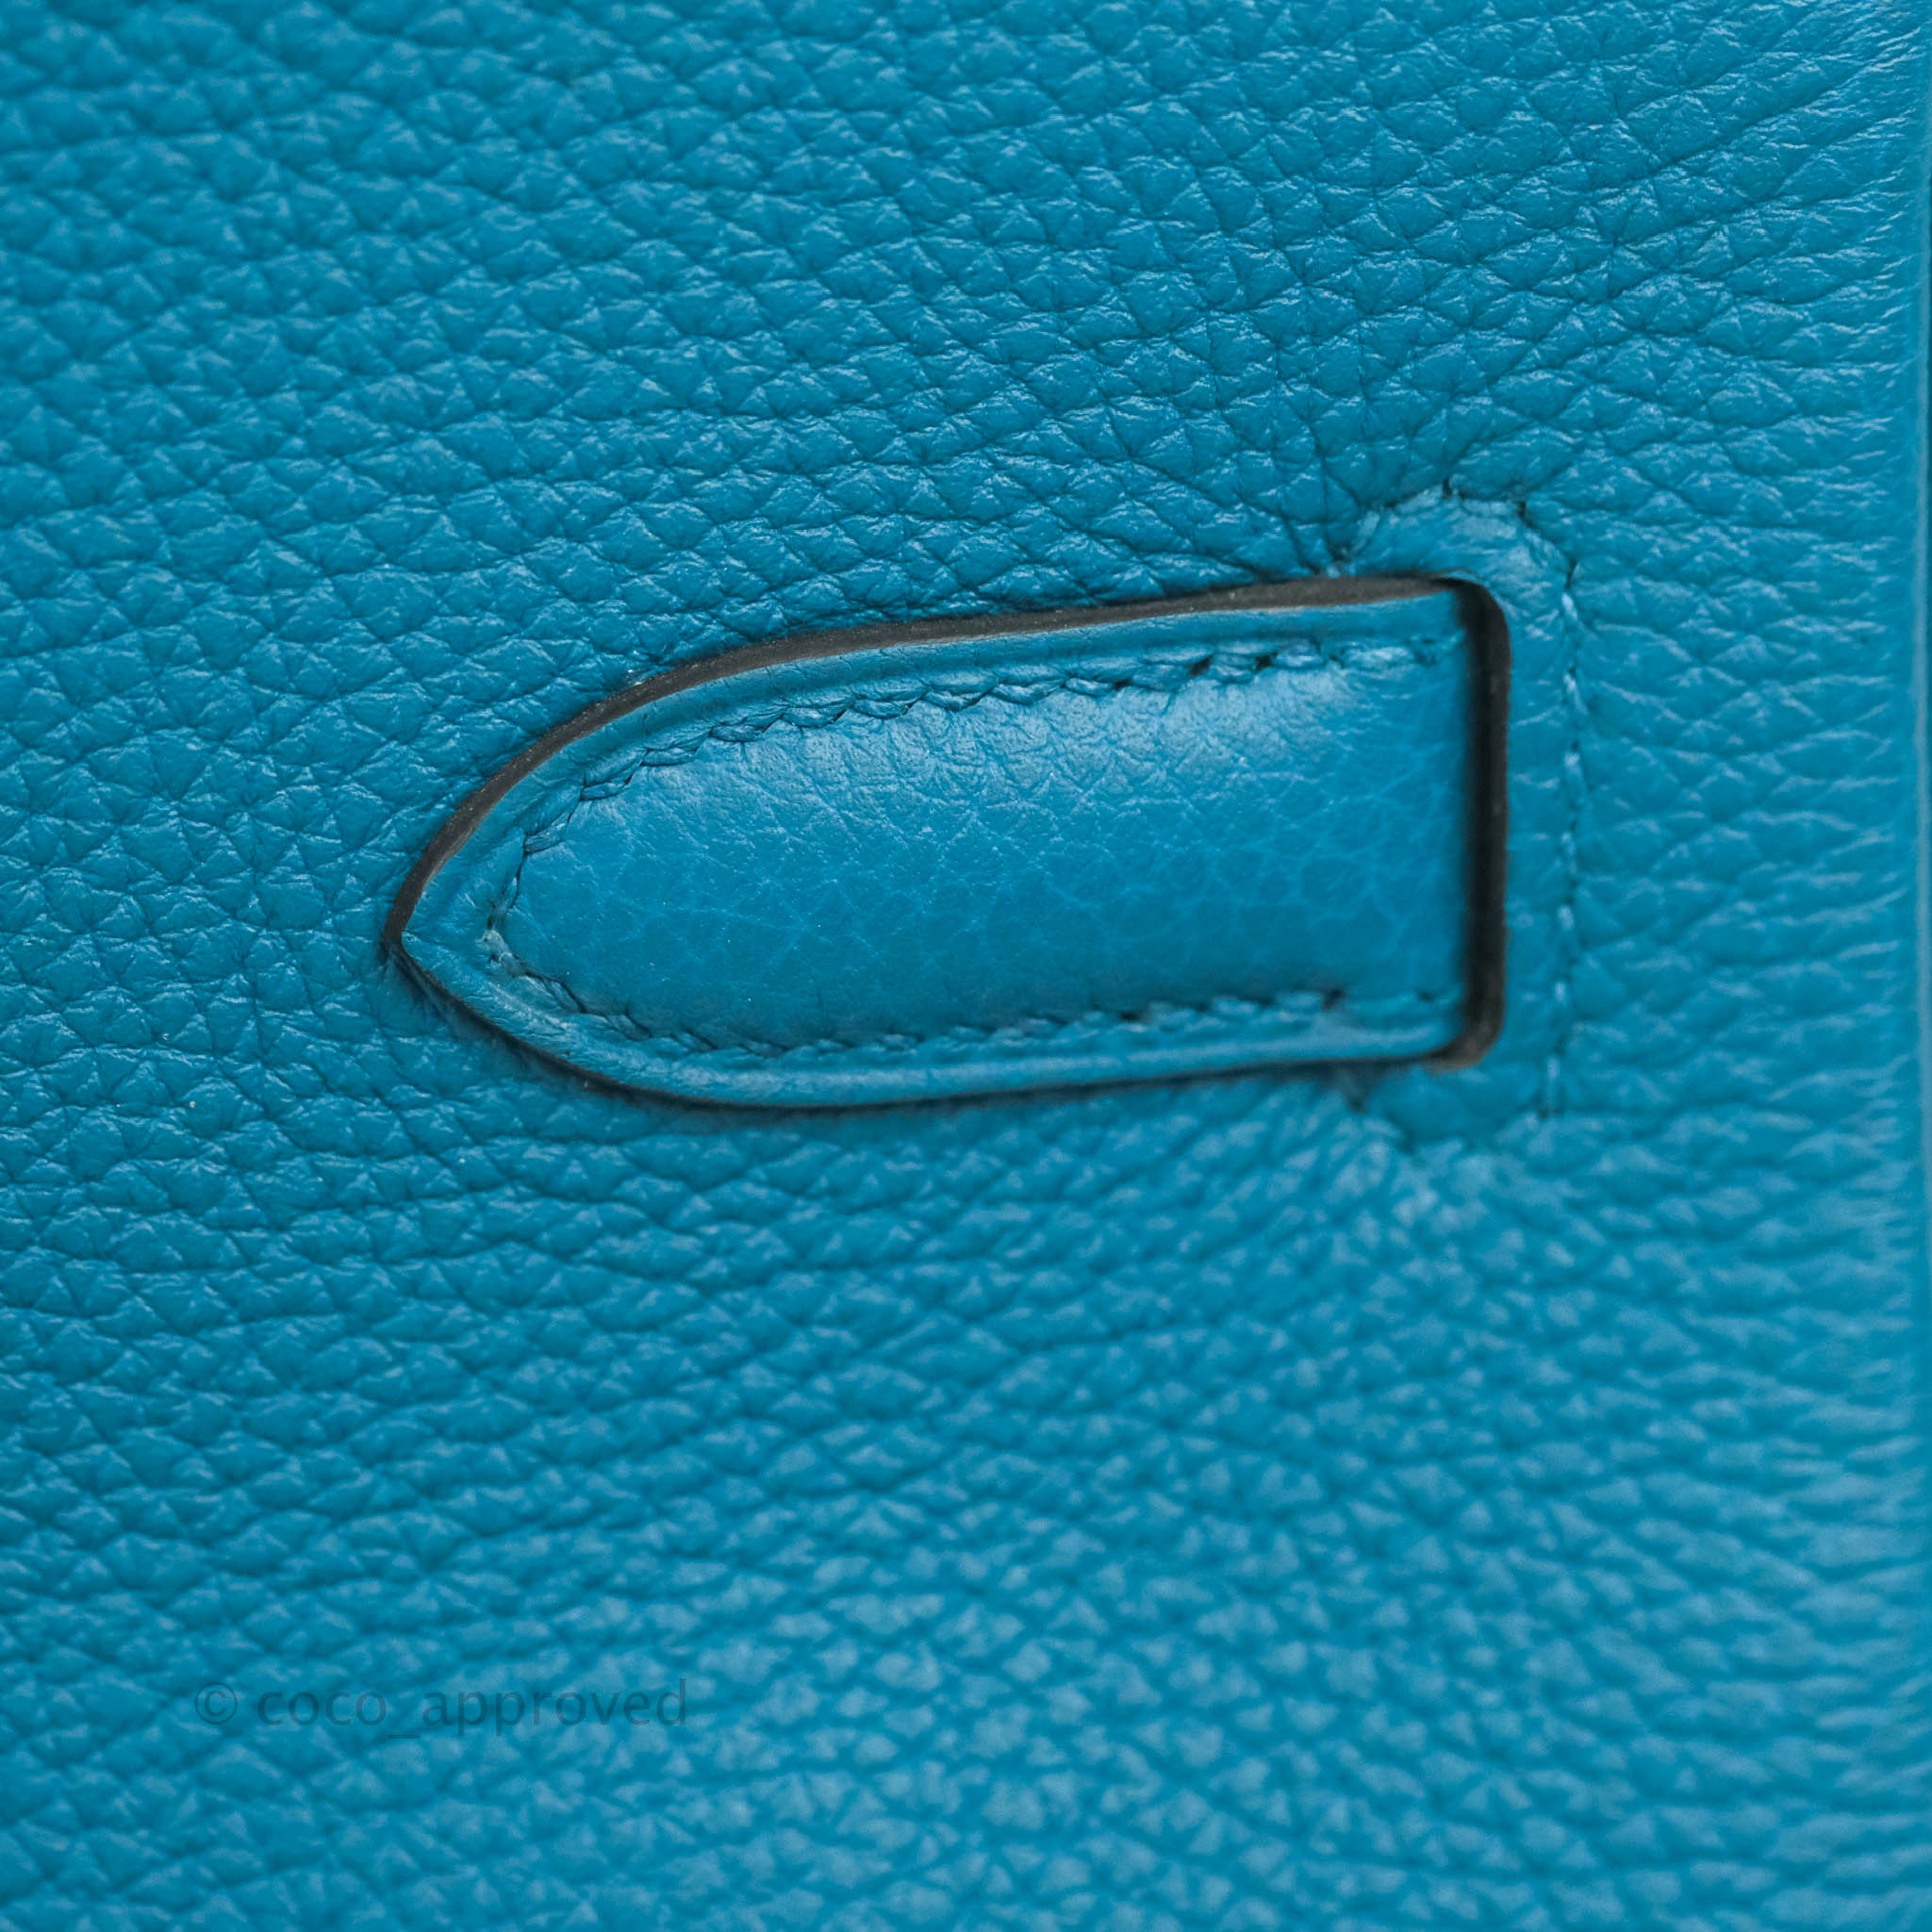 Hermès Birkin 35 Cobalt Togo Palladium Hardware – Coco Approved Studio